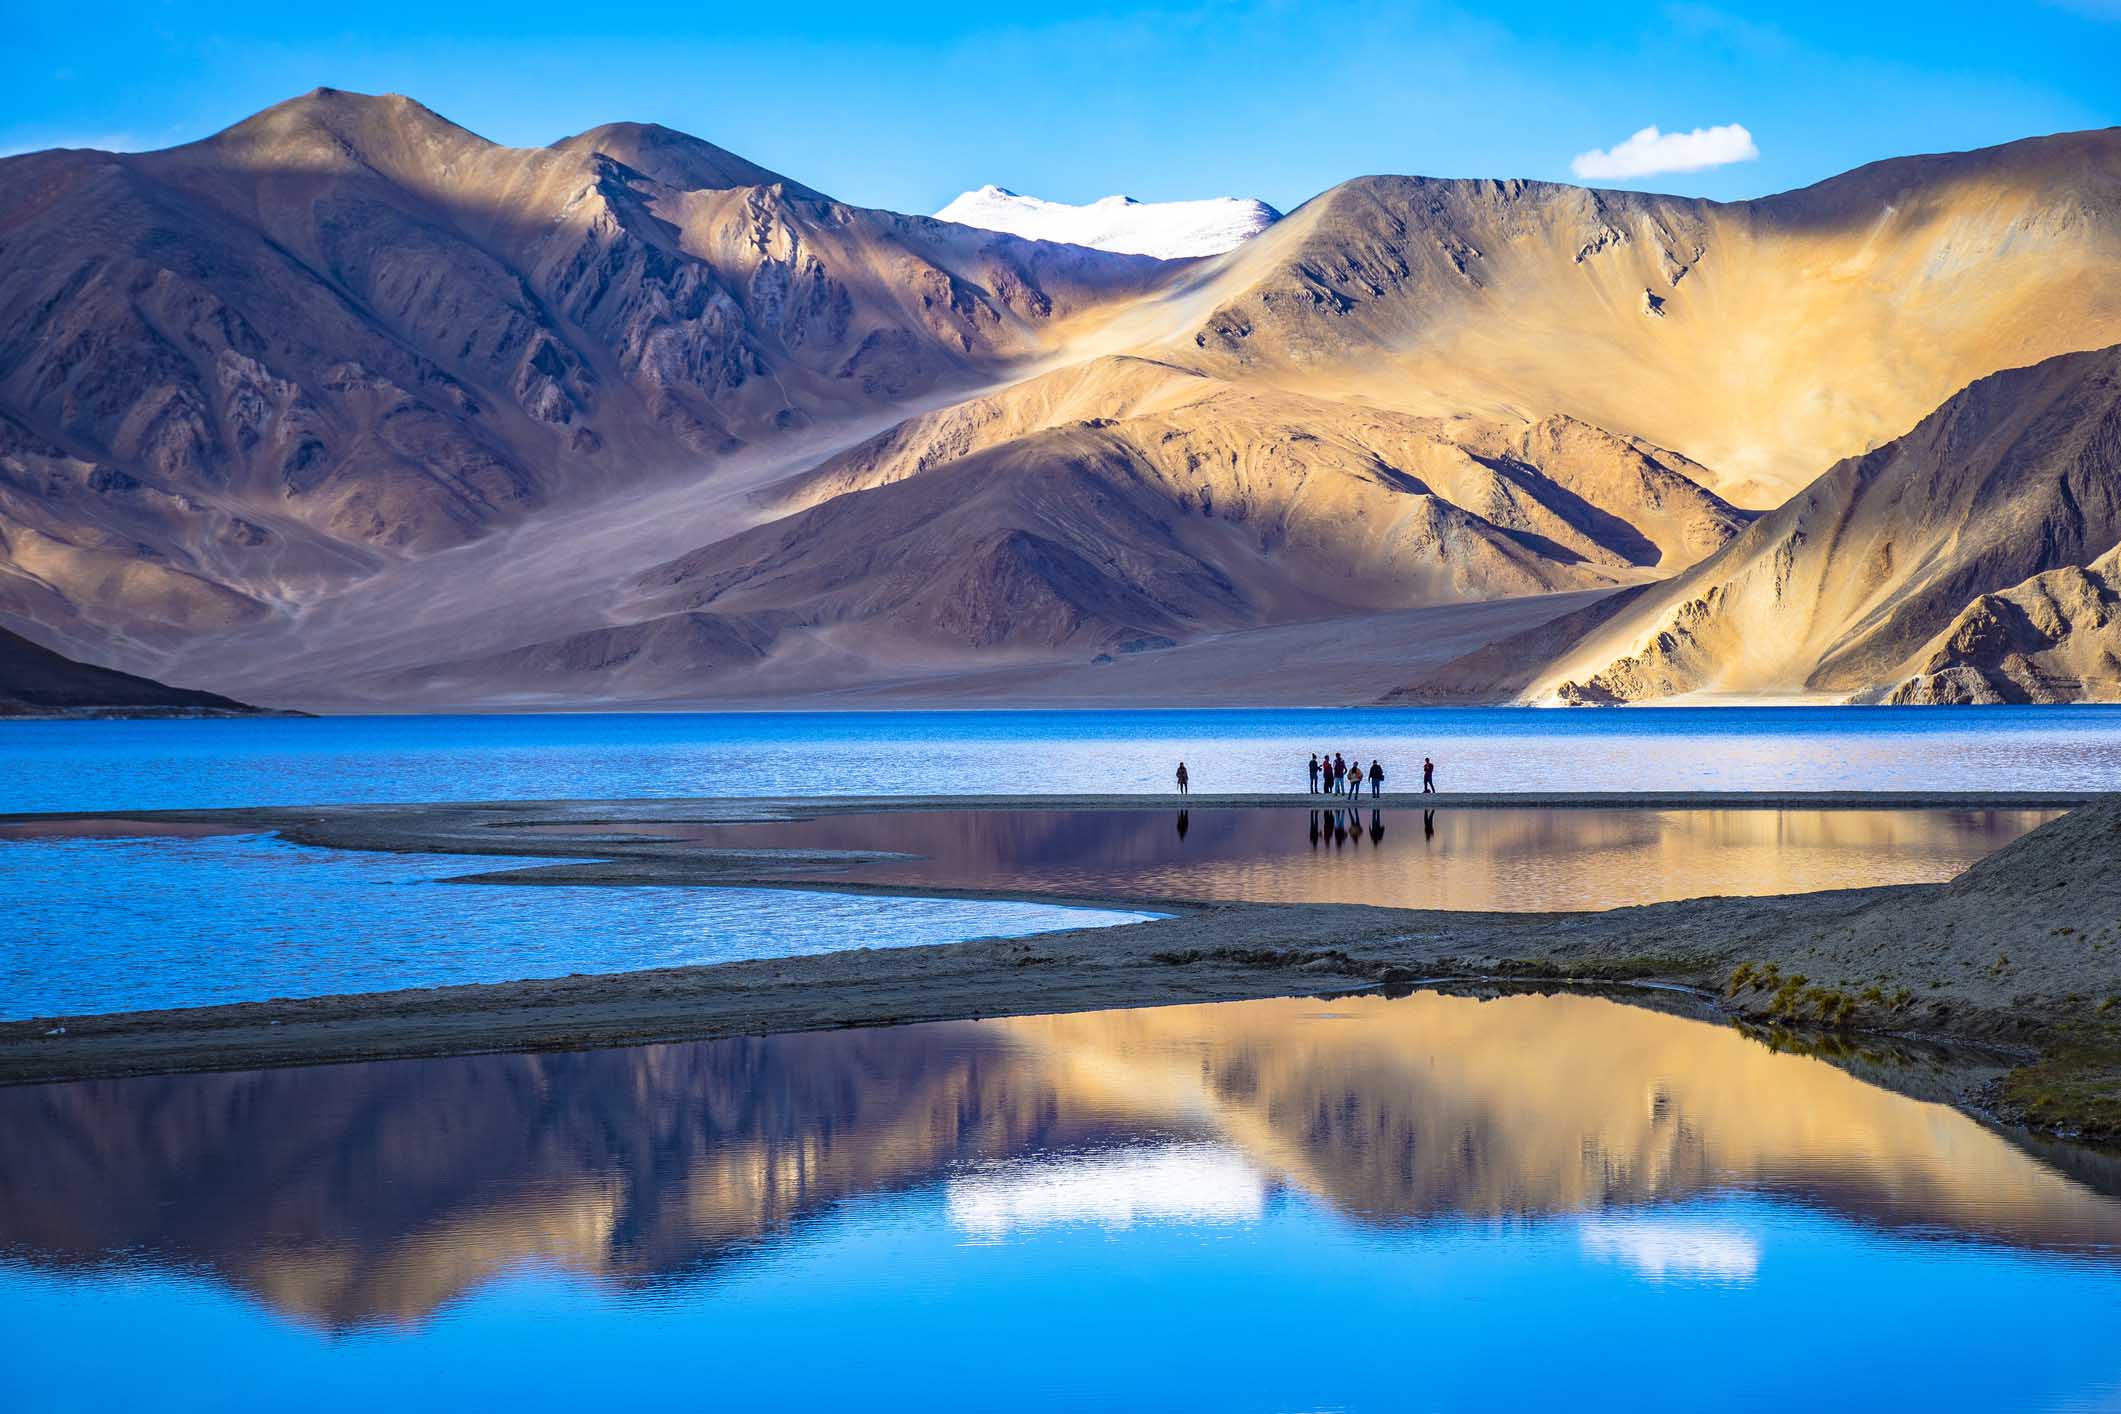 Leh Ladakh in India